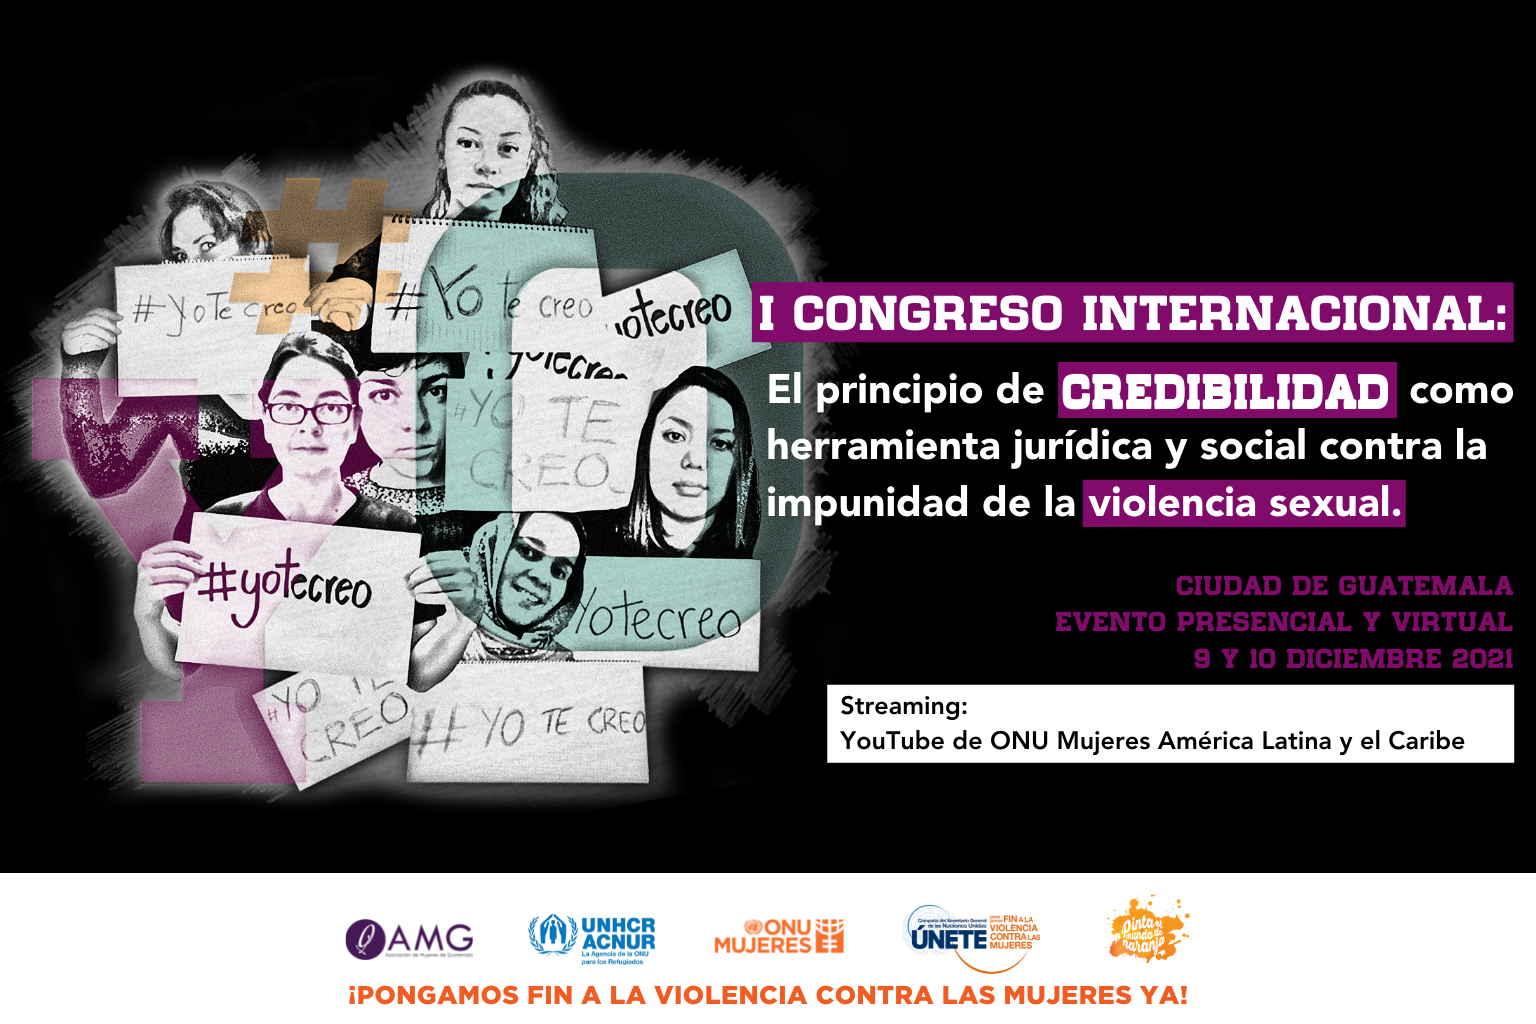 I Congreso Internacional “El principio de credibilidad como  herramienta contra la impunidad de la violencia sexual”